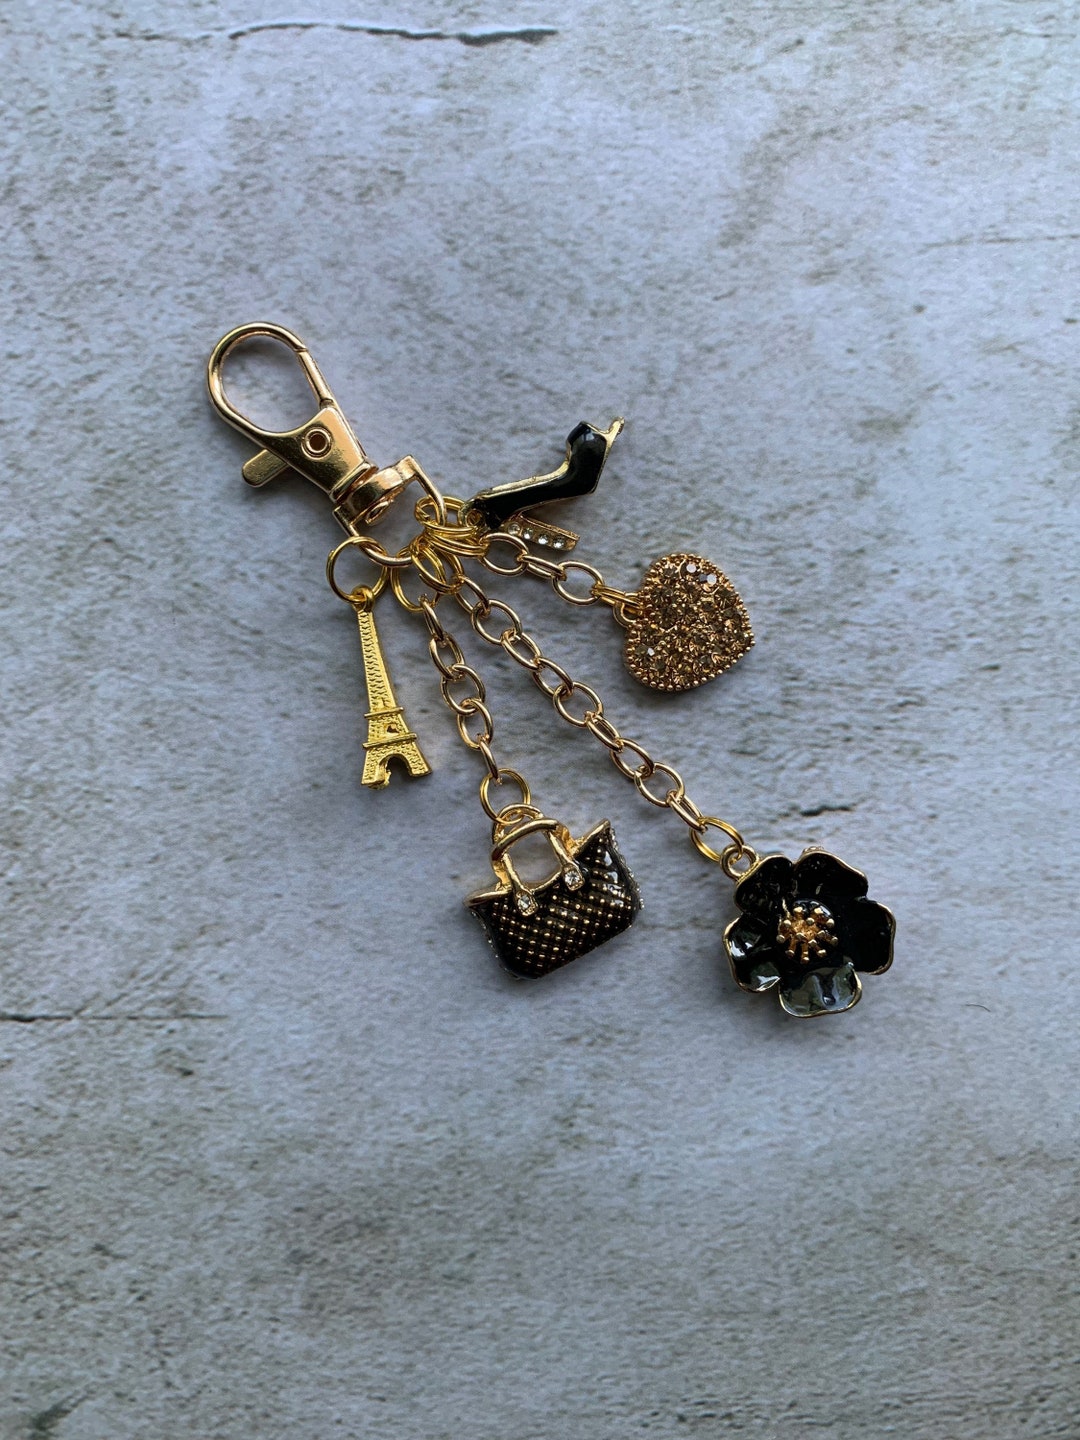 Mini Copper Purse Chains Shoulder Crossbody Strap Bag Accessories Charm  Decoration (Antique Gold,13'')